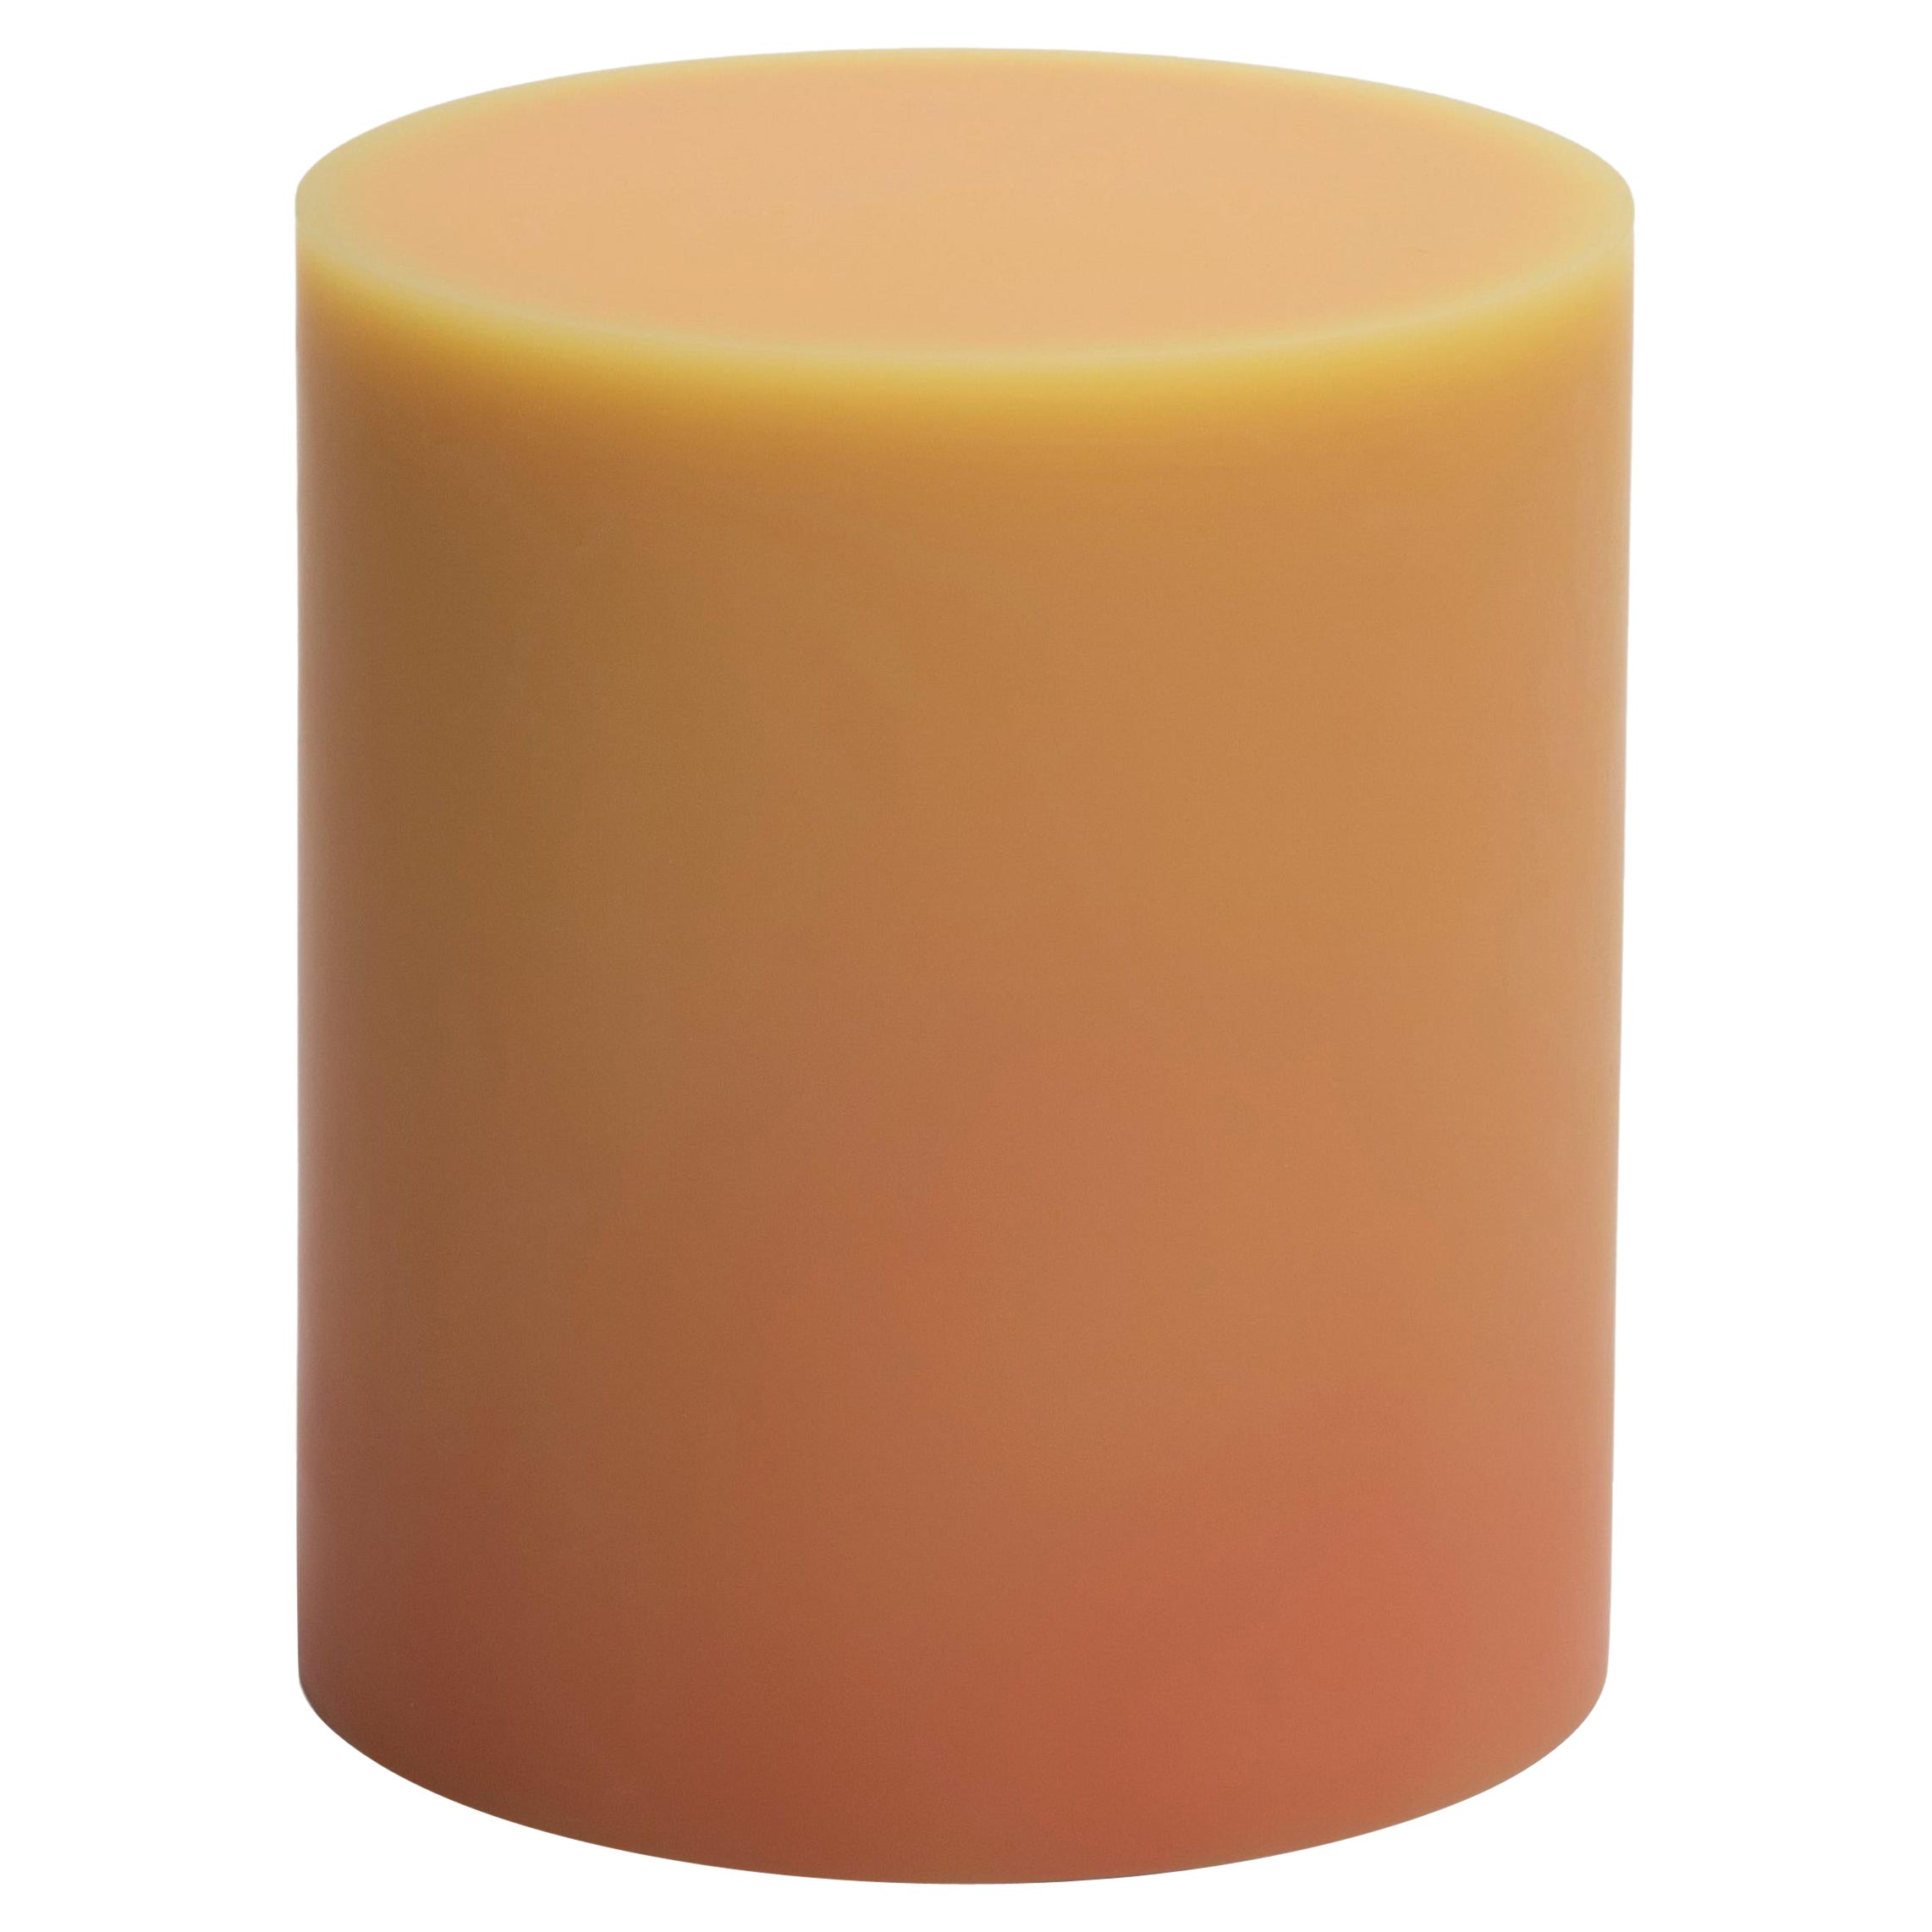 Tabouret/table d'appoint en résine droite orange/jaune par Facture, REP par Tuleste Factory